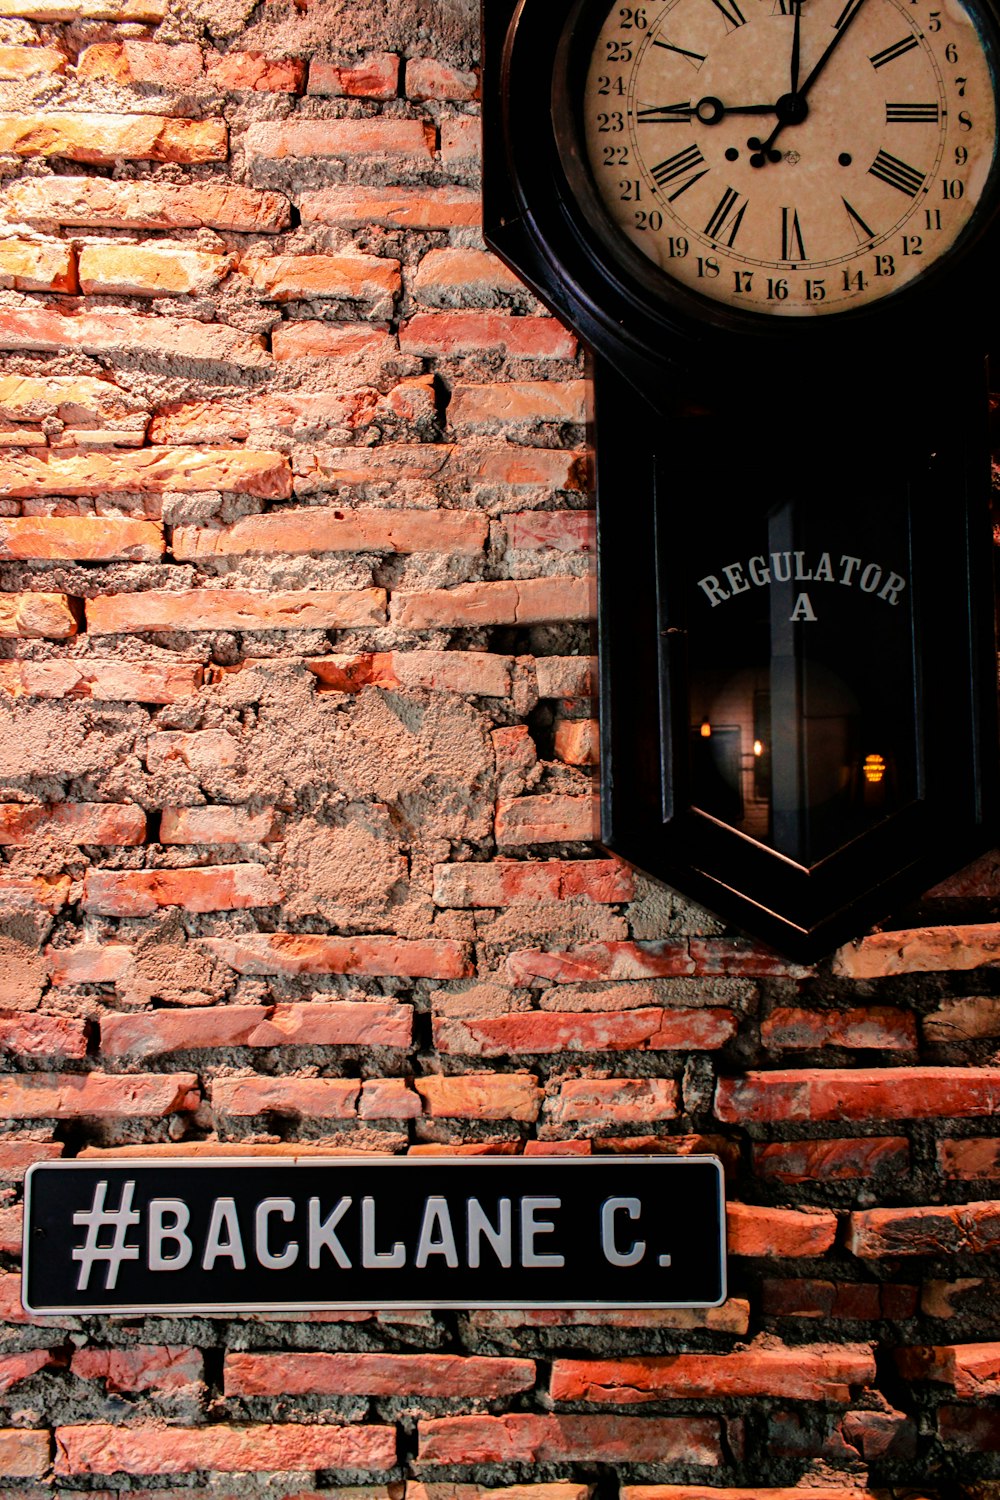 Backlane signage on brick wall